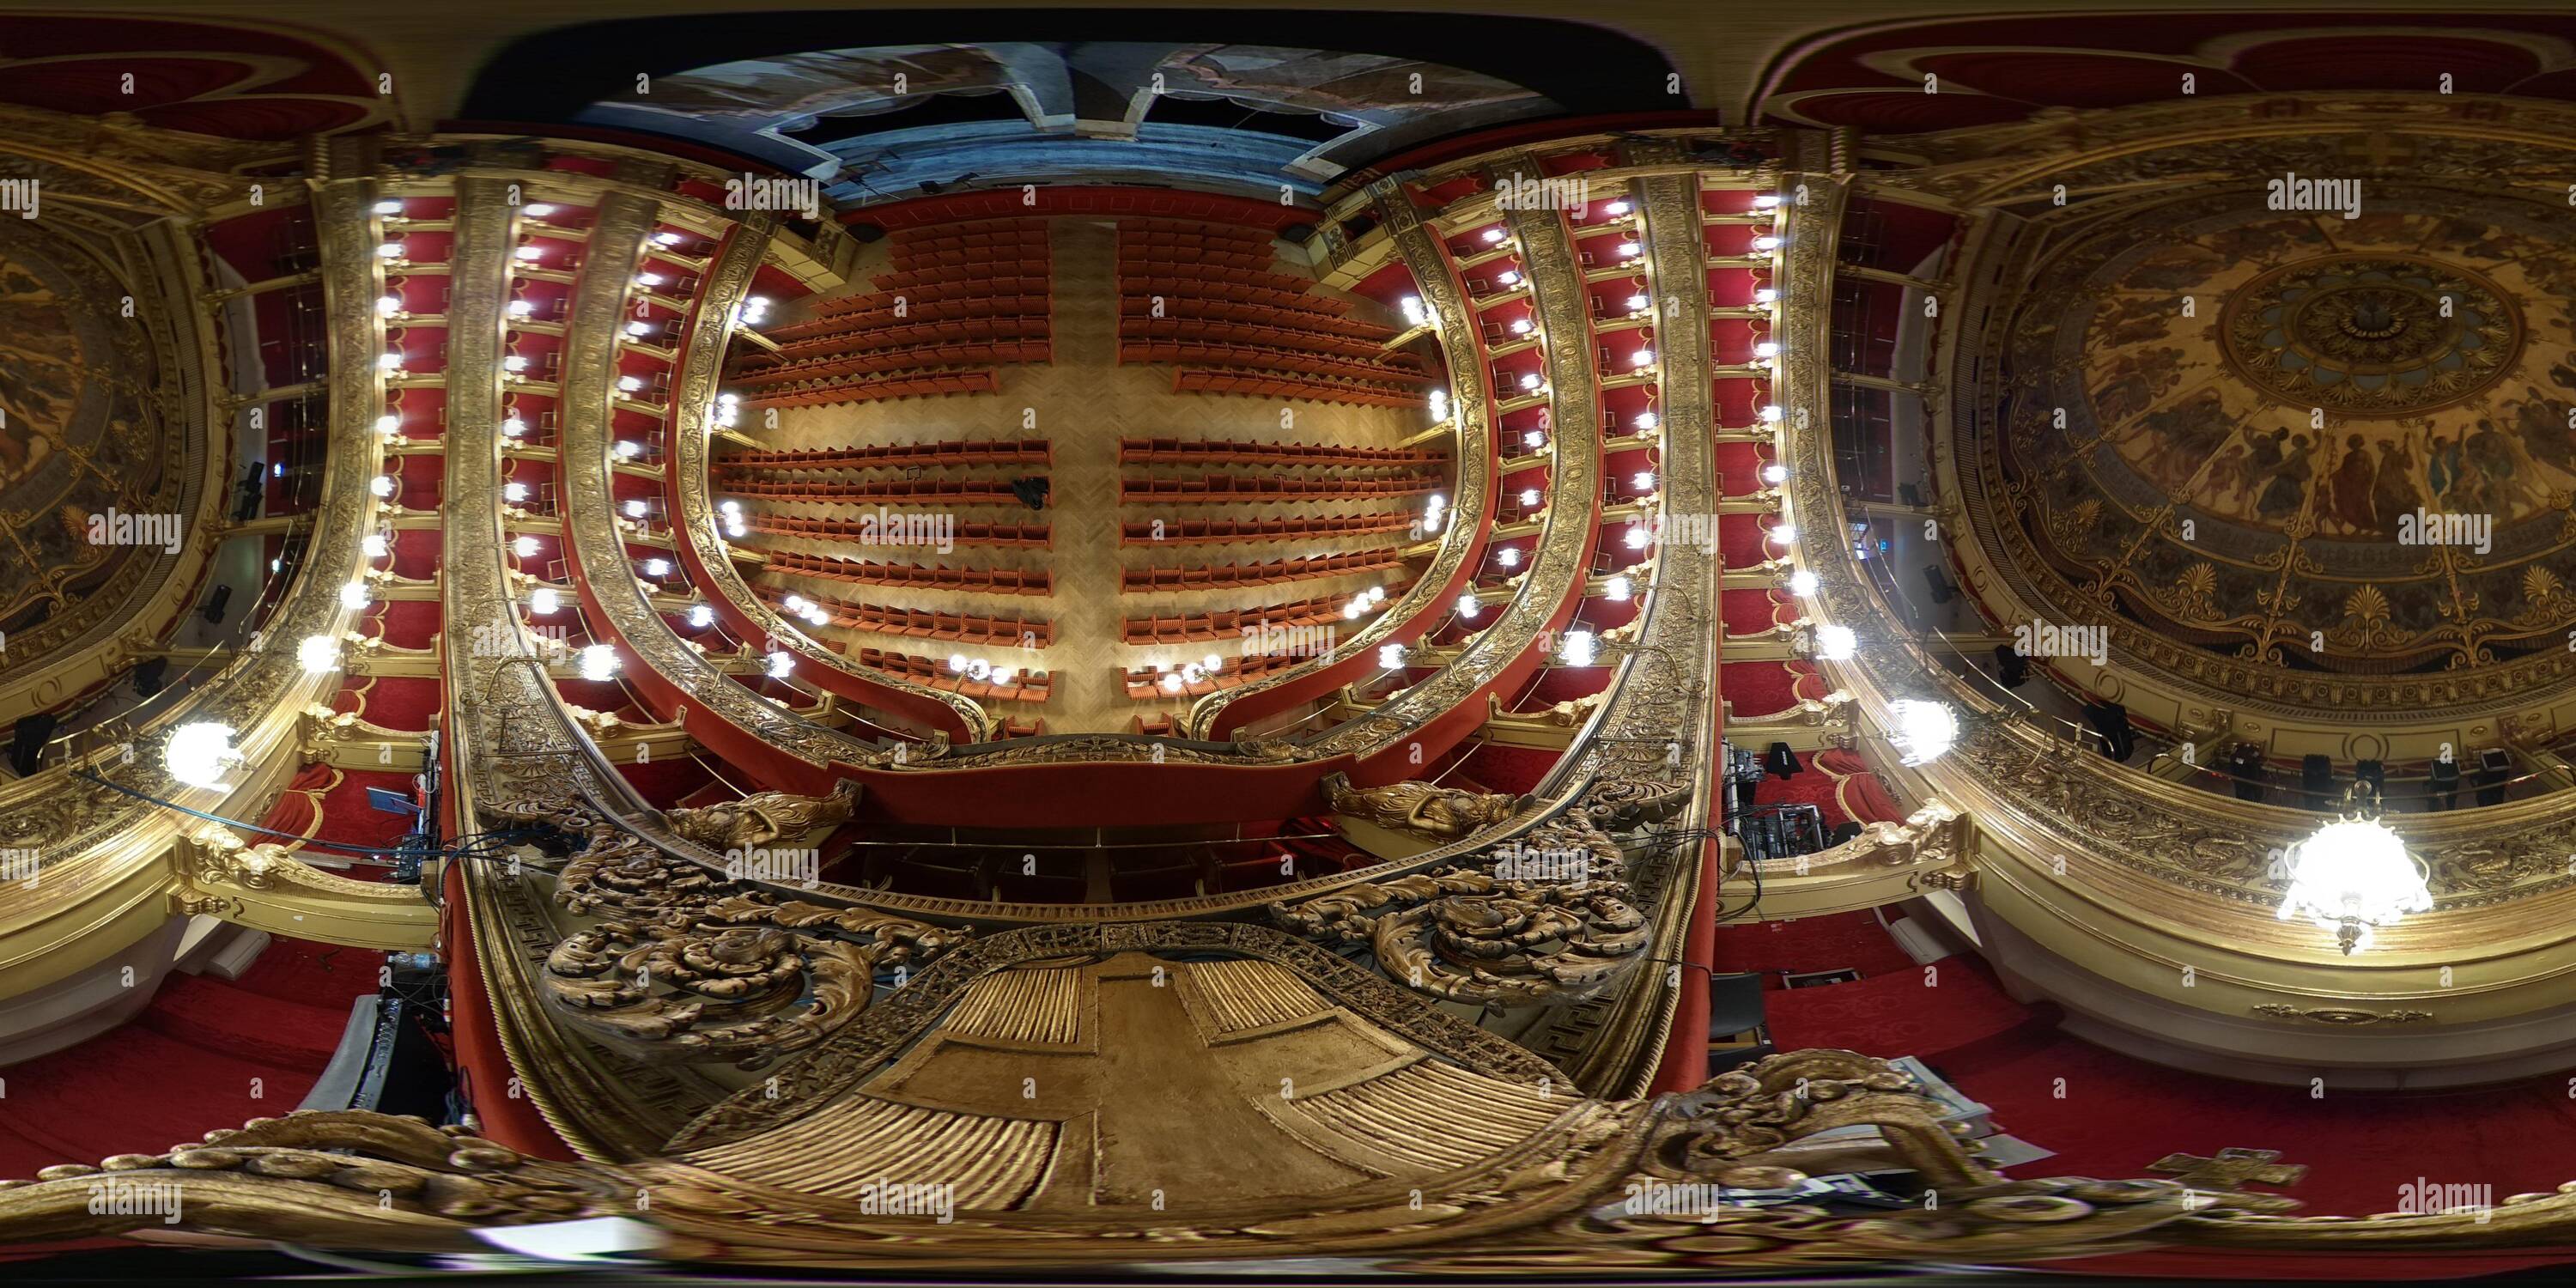 Visualizzazione panoramica a 360 gradi di Torino, Italia - Gennaio 2019: Teatro Teatro Carignano